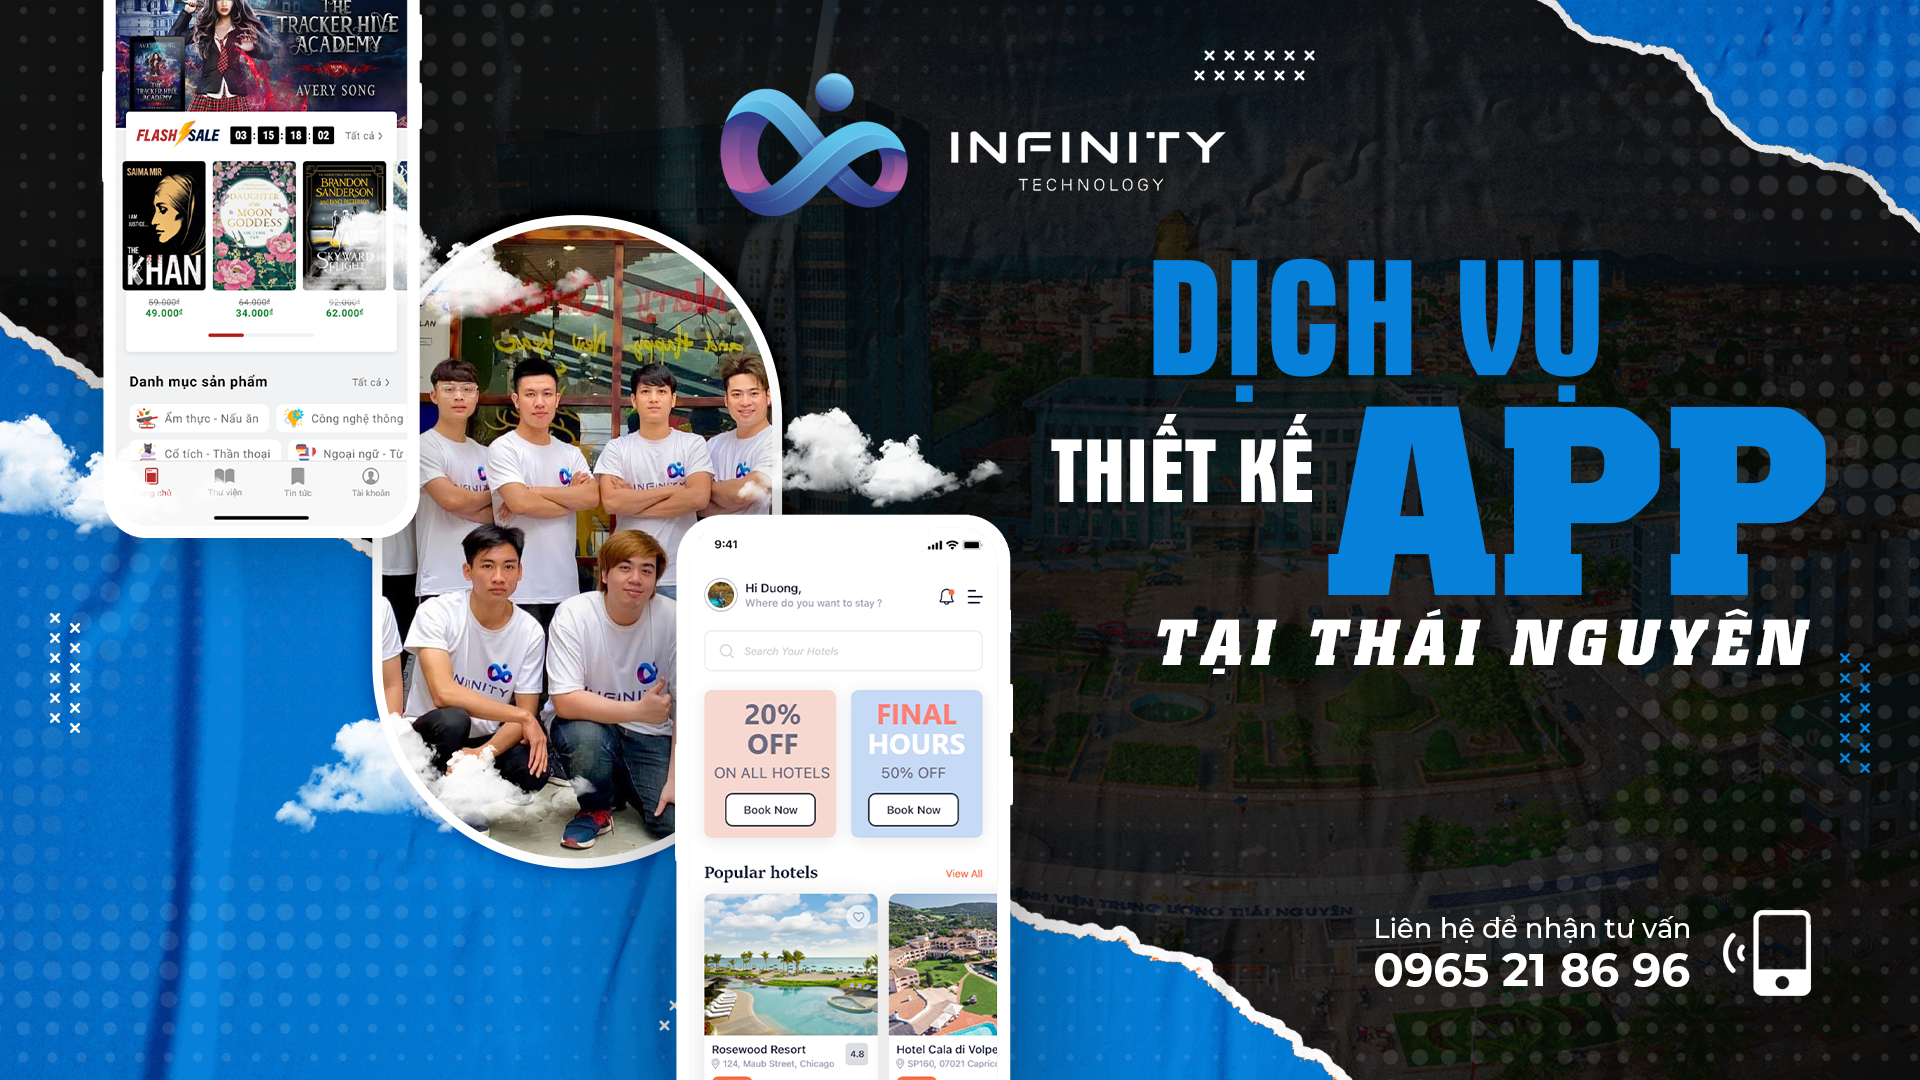 Dịch vụ thiết kế app mobile tại Thái Nguyên